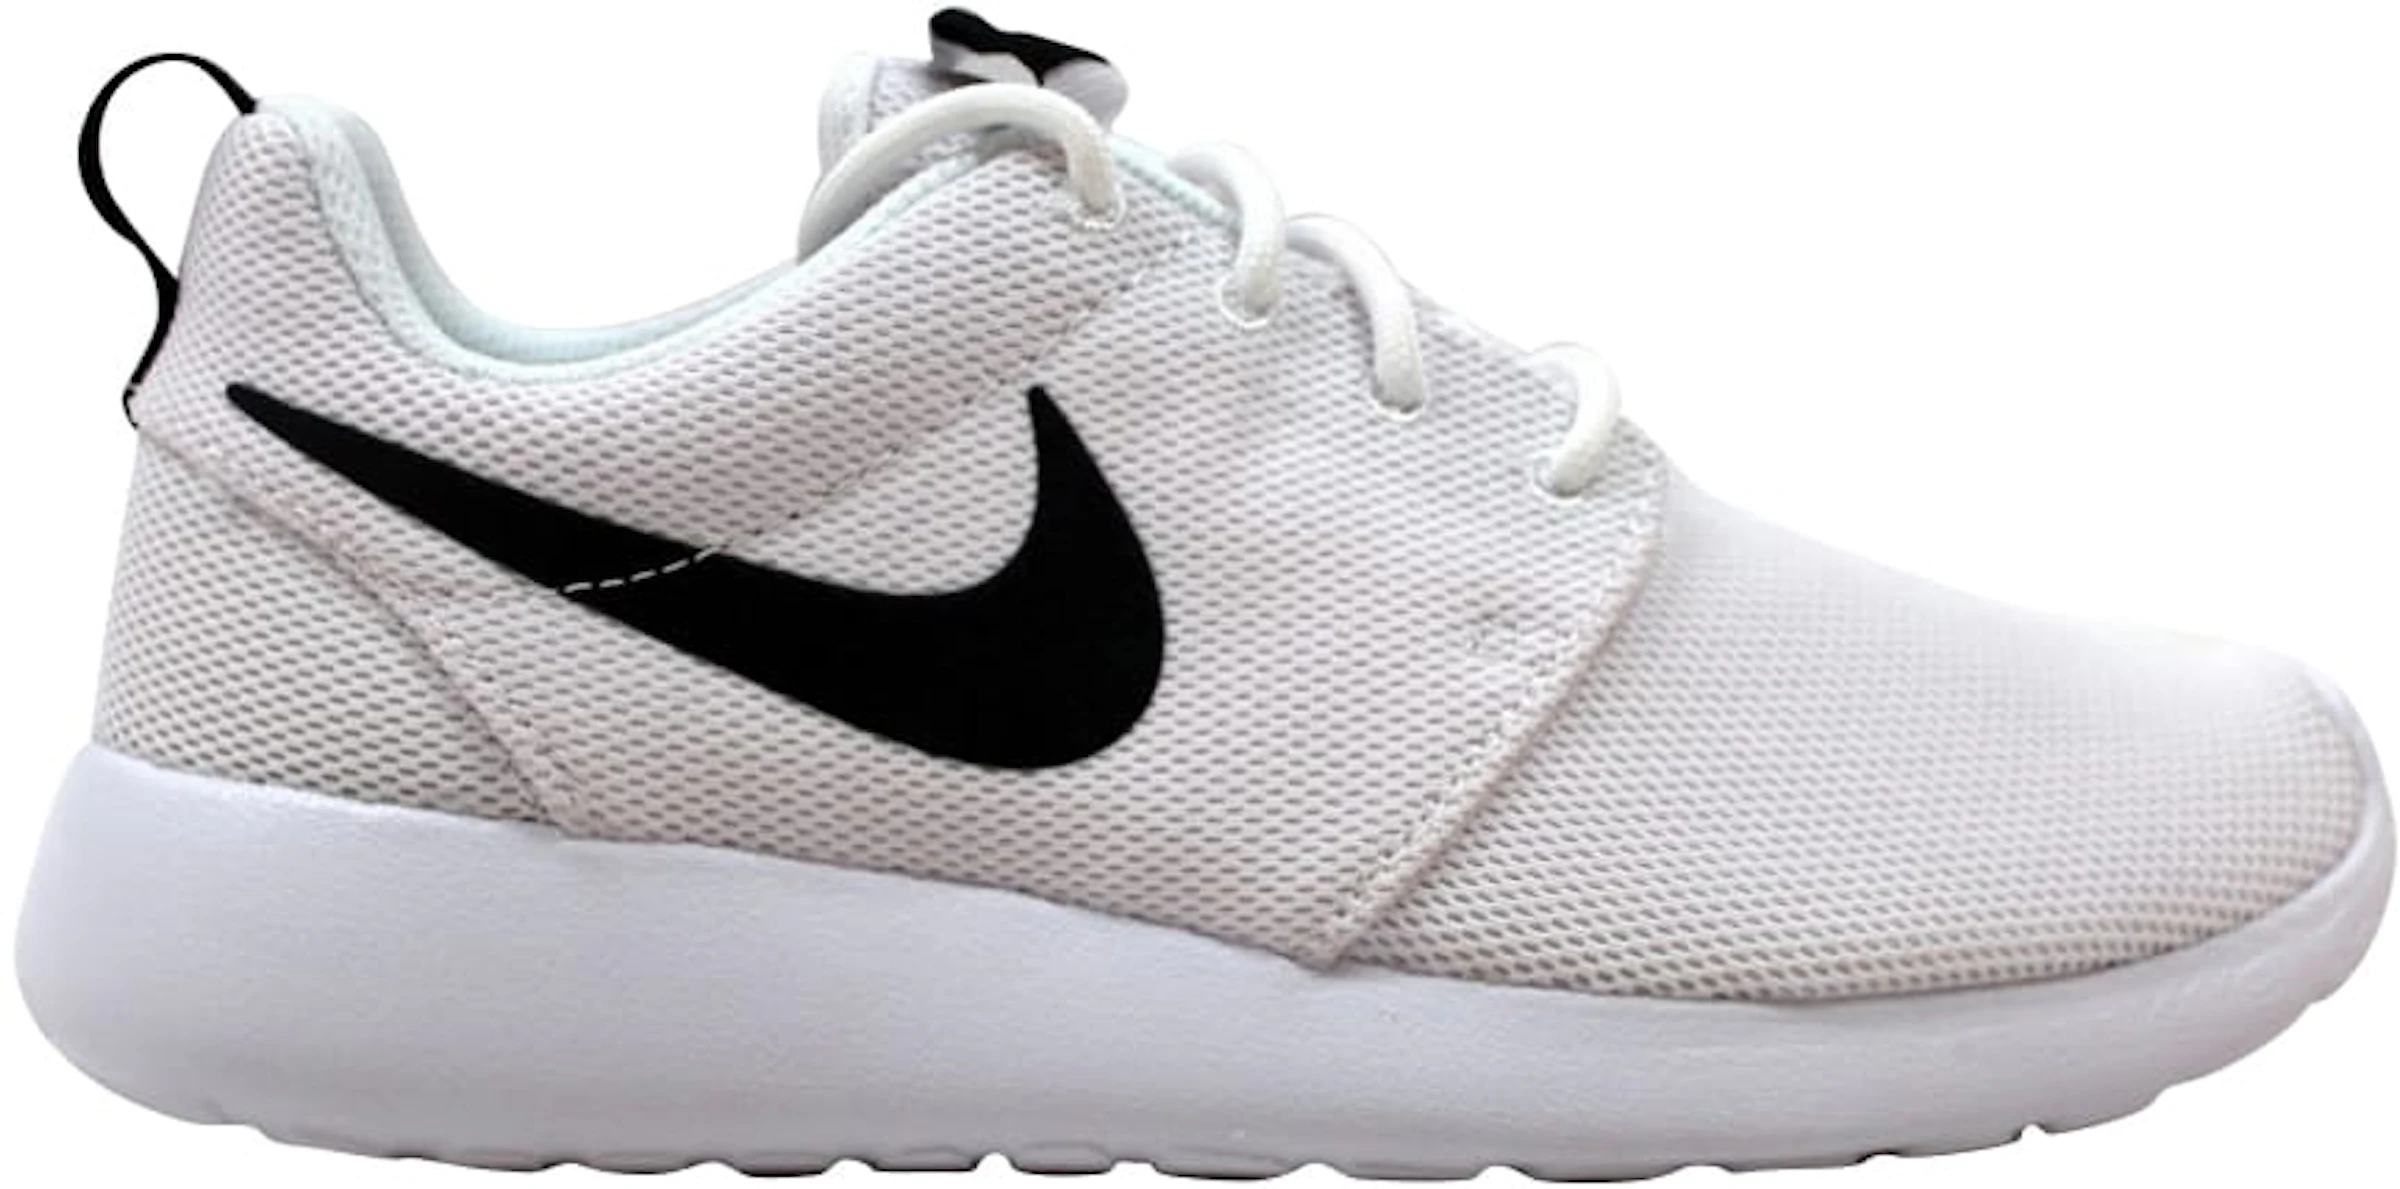 spoor geur Adviseur Nike Roshe One White/White-Black (Women's) - 844994-101 - US